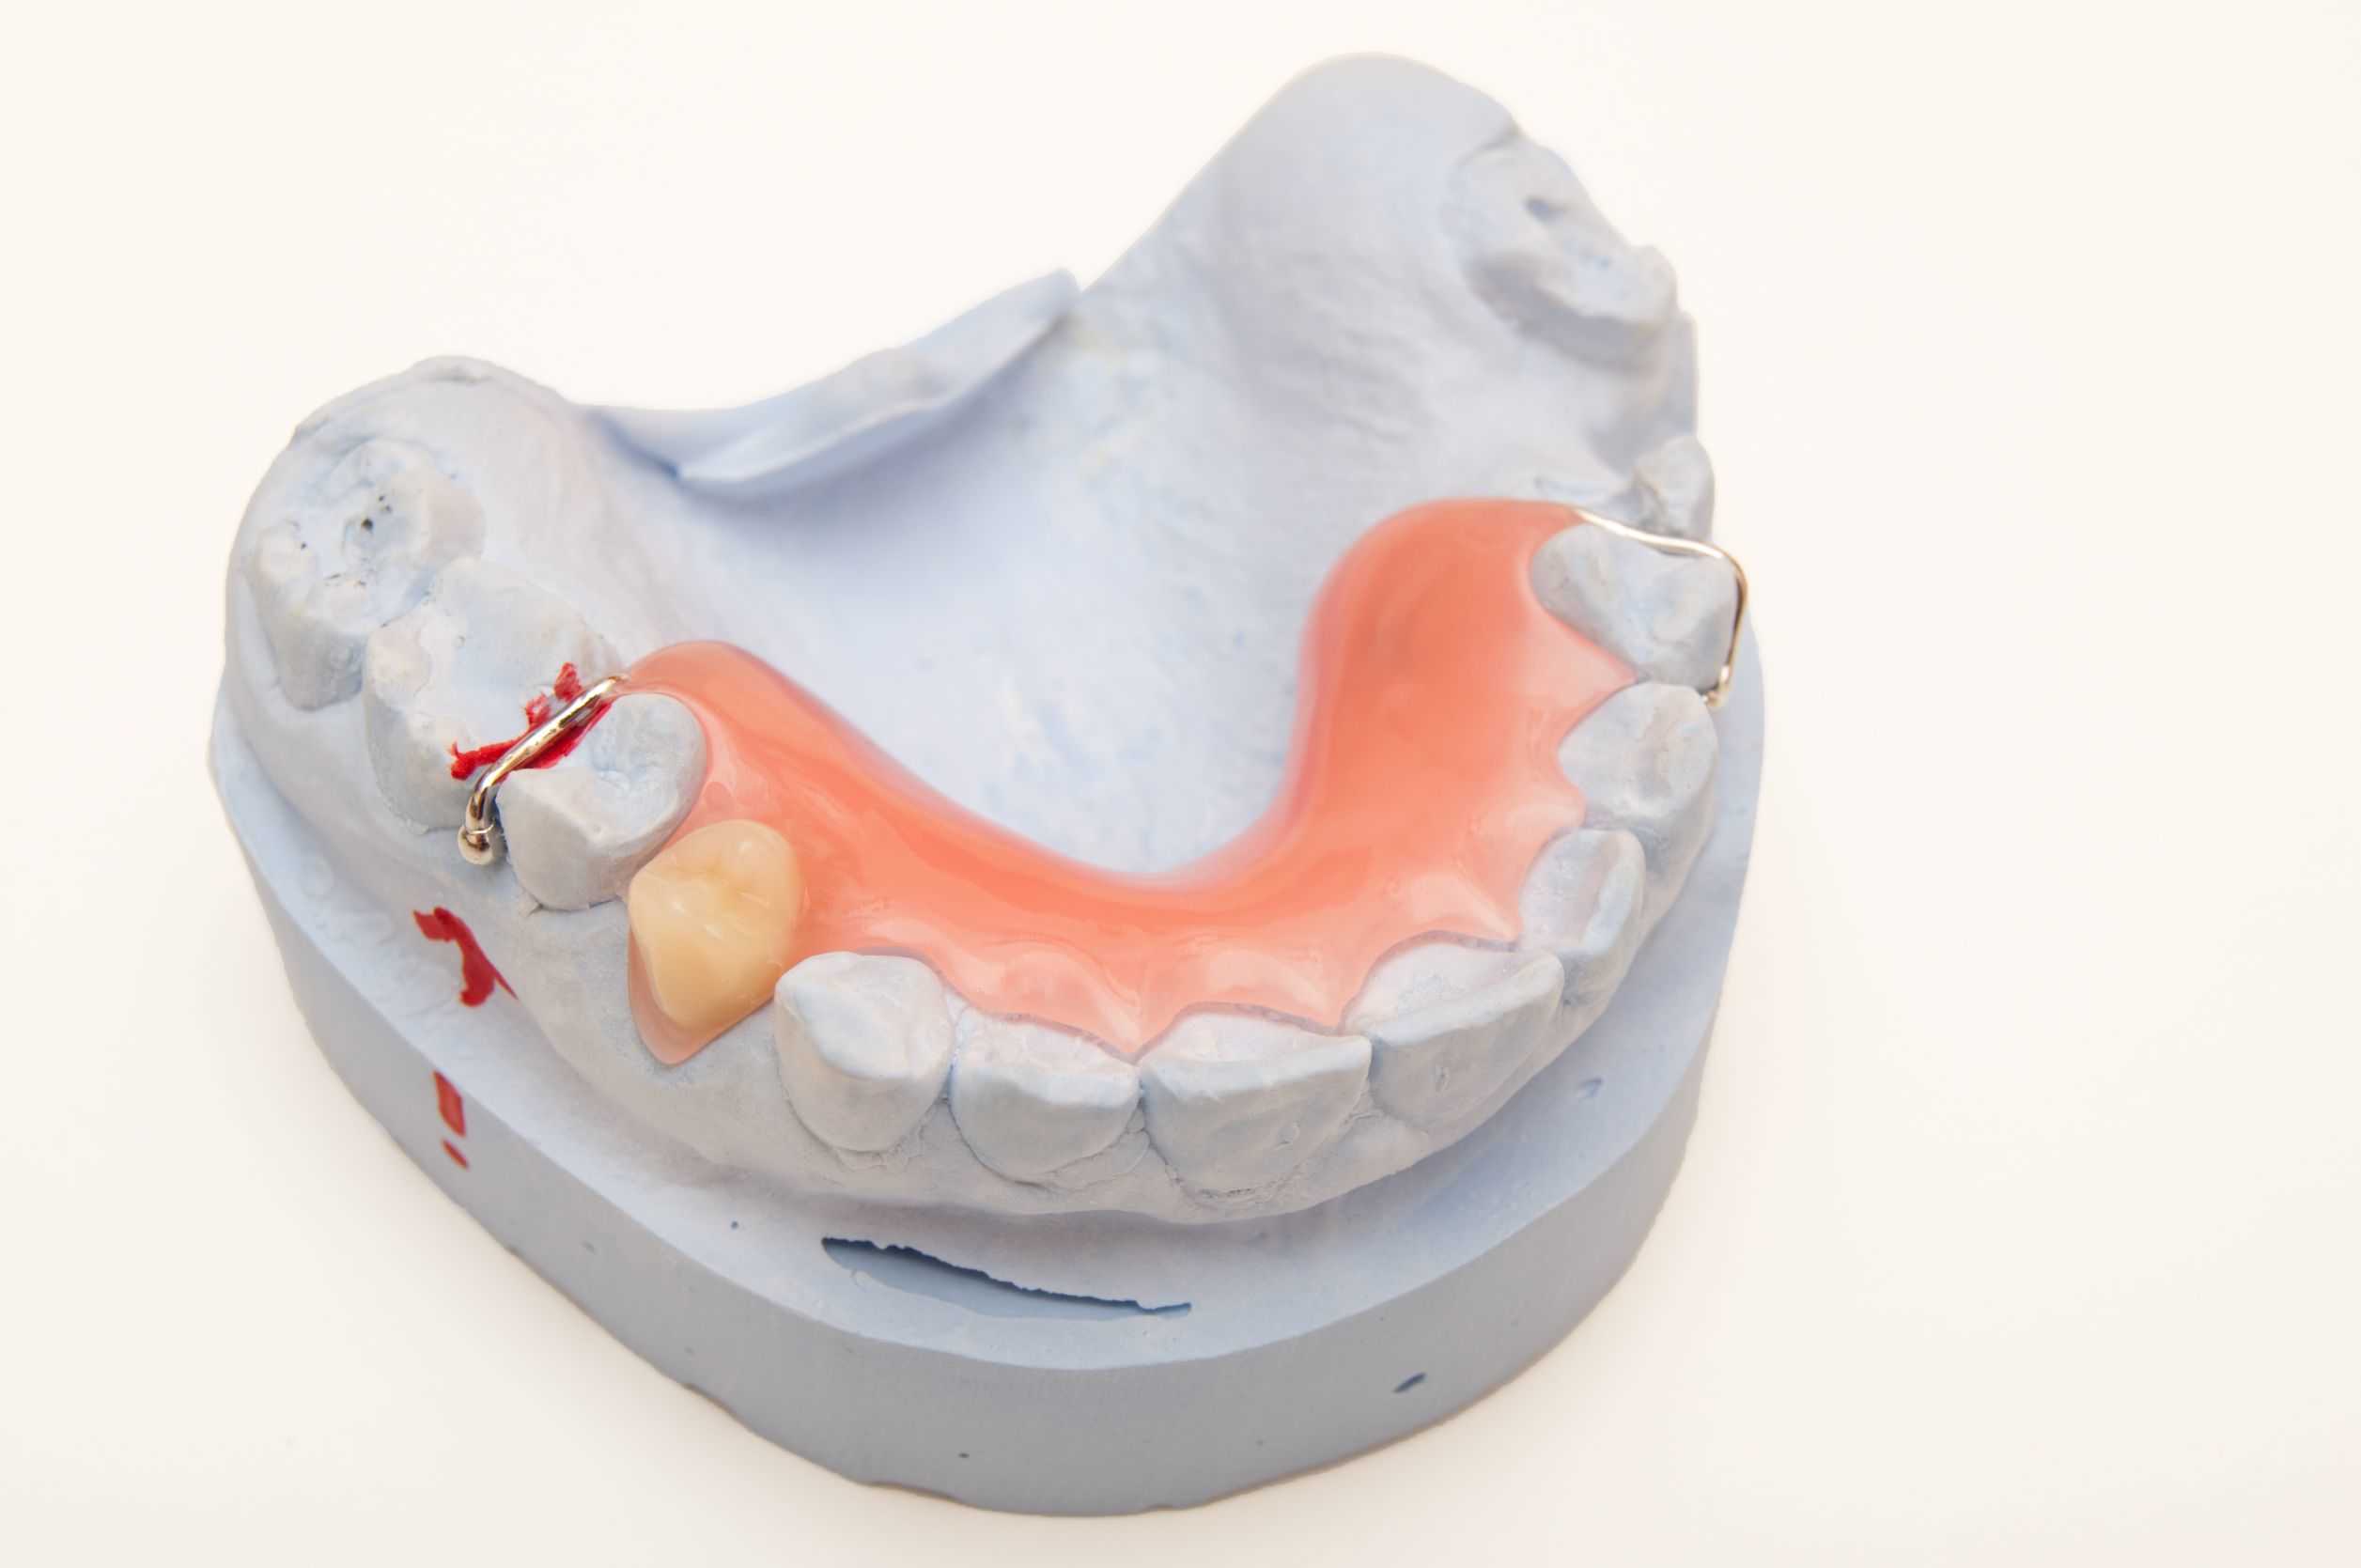 La necesidad de usar prótesis dentales